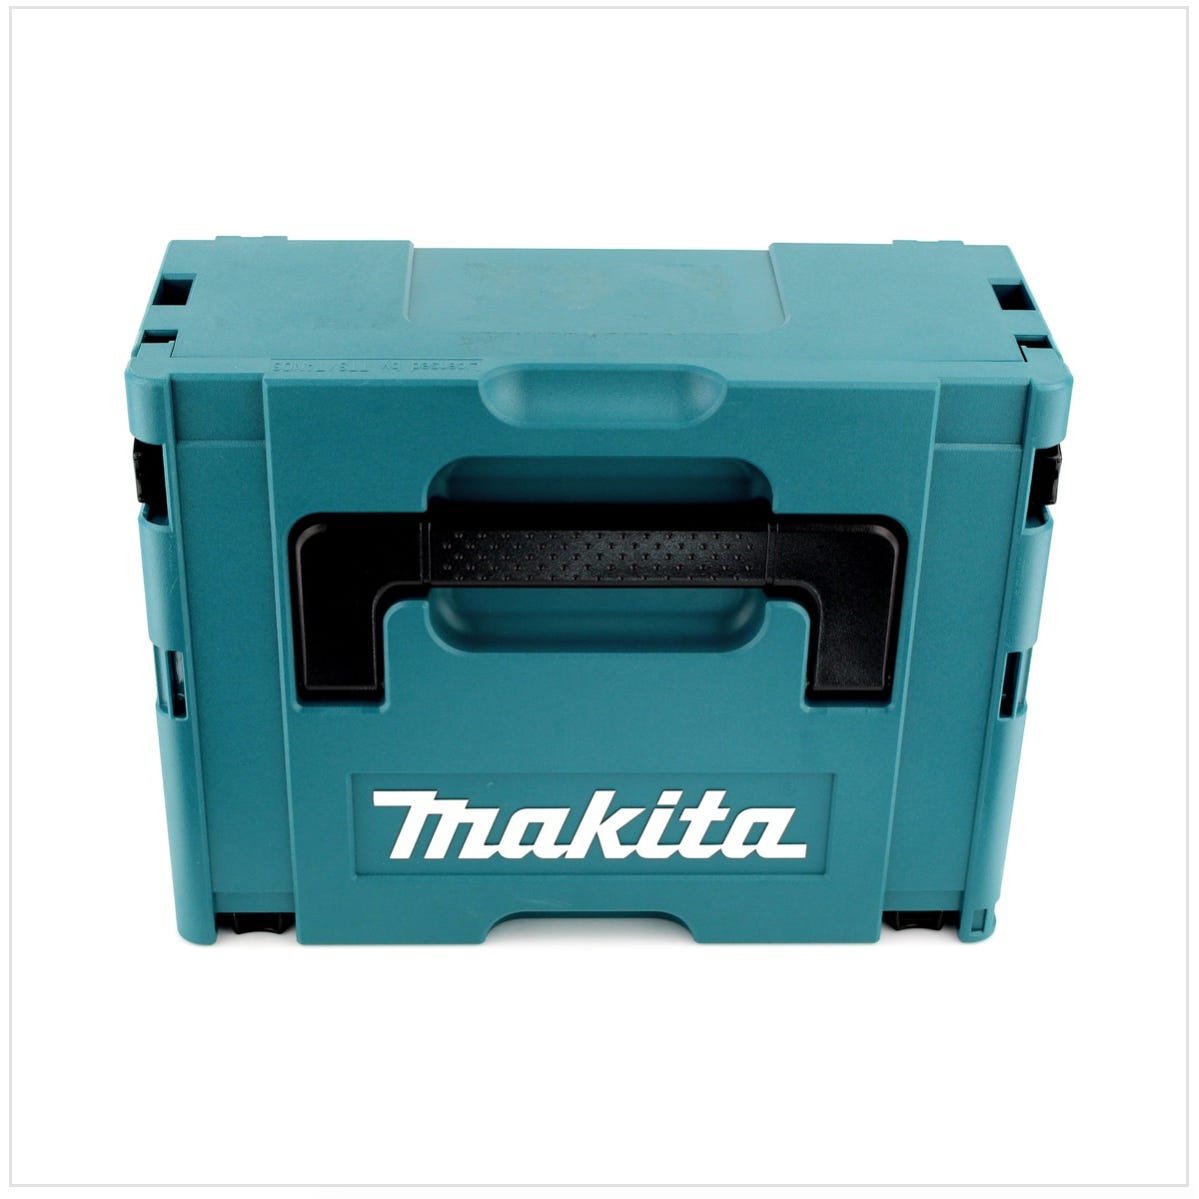 Makita DHP 483 ZJ 18 V Li-Ion Brushless Perceuse visseuse à percussion sans fil avec boîtier Makpac - sans Accessoires, ni Batteries, ni Chargeur 2